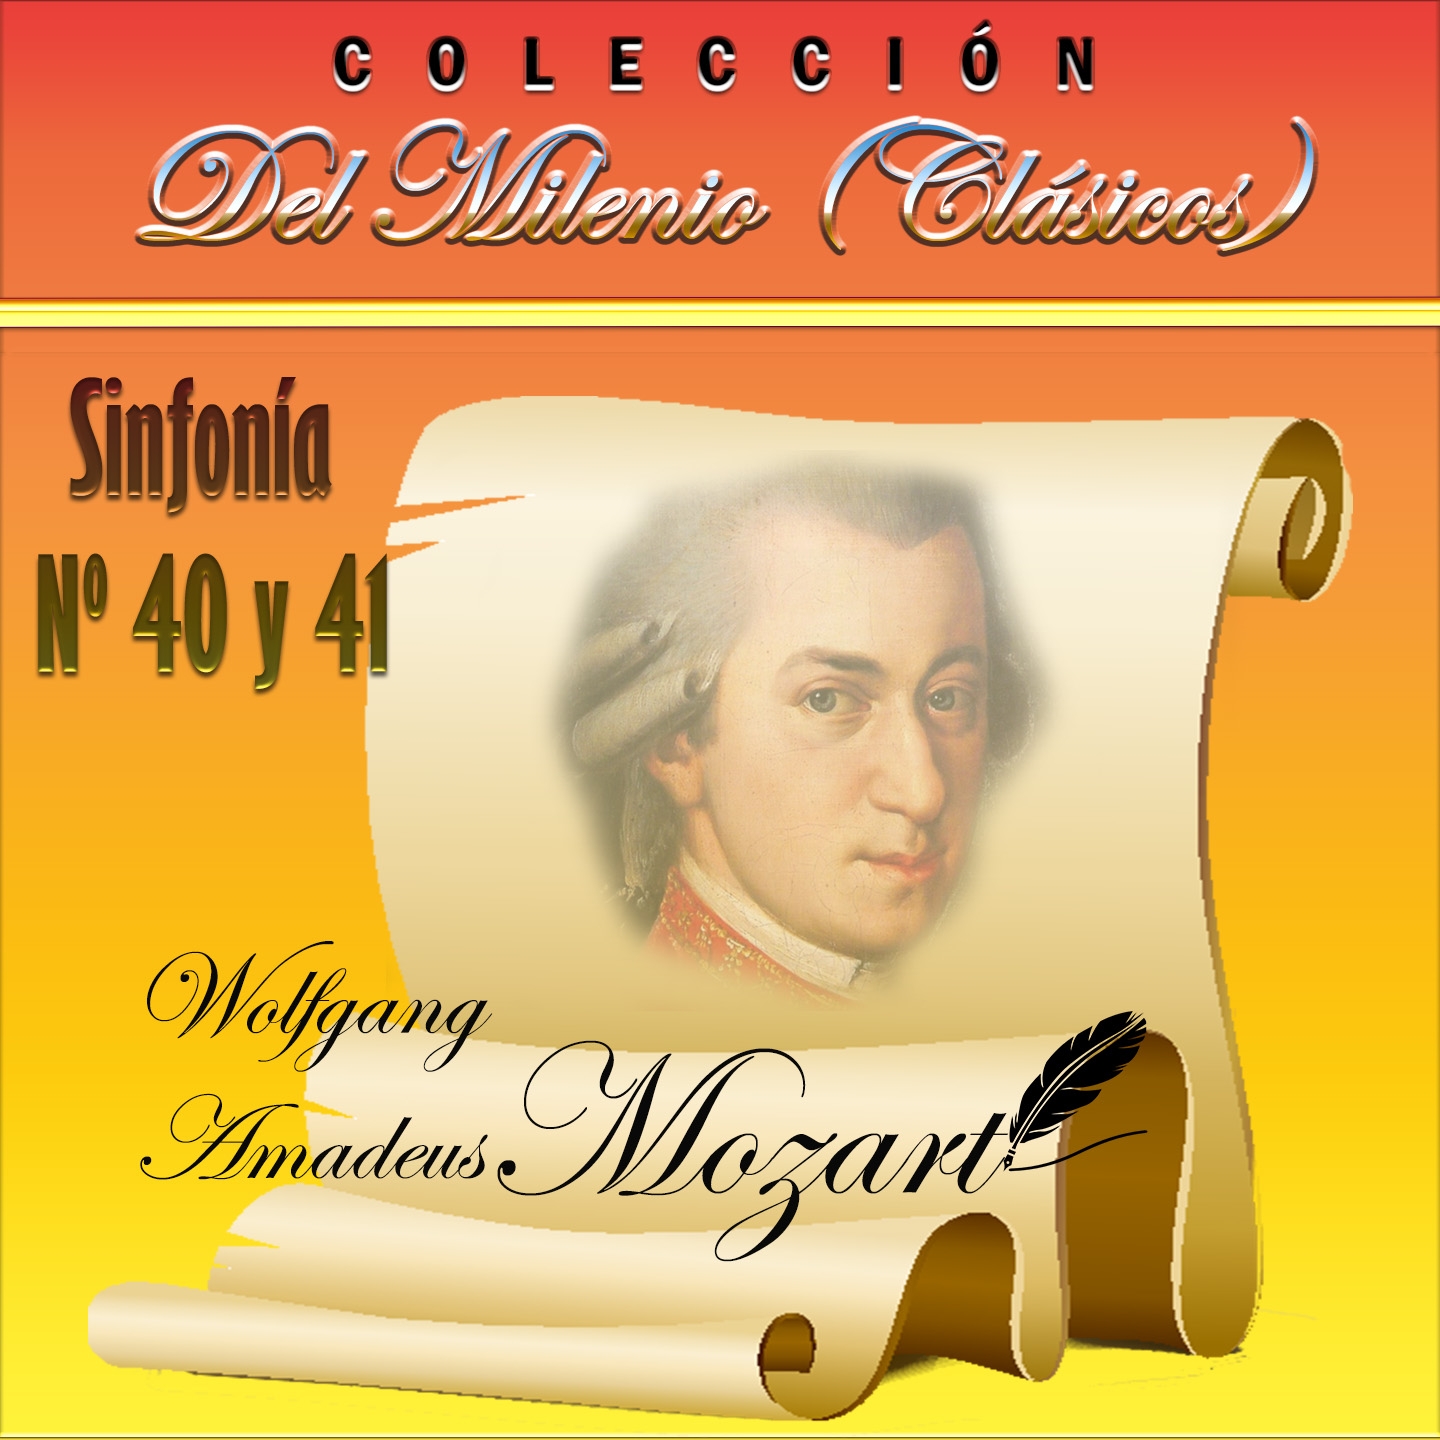 Coleccio n del Milenio: Sinfoni a Nos. 40 y 41